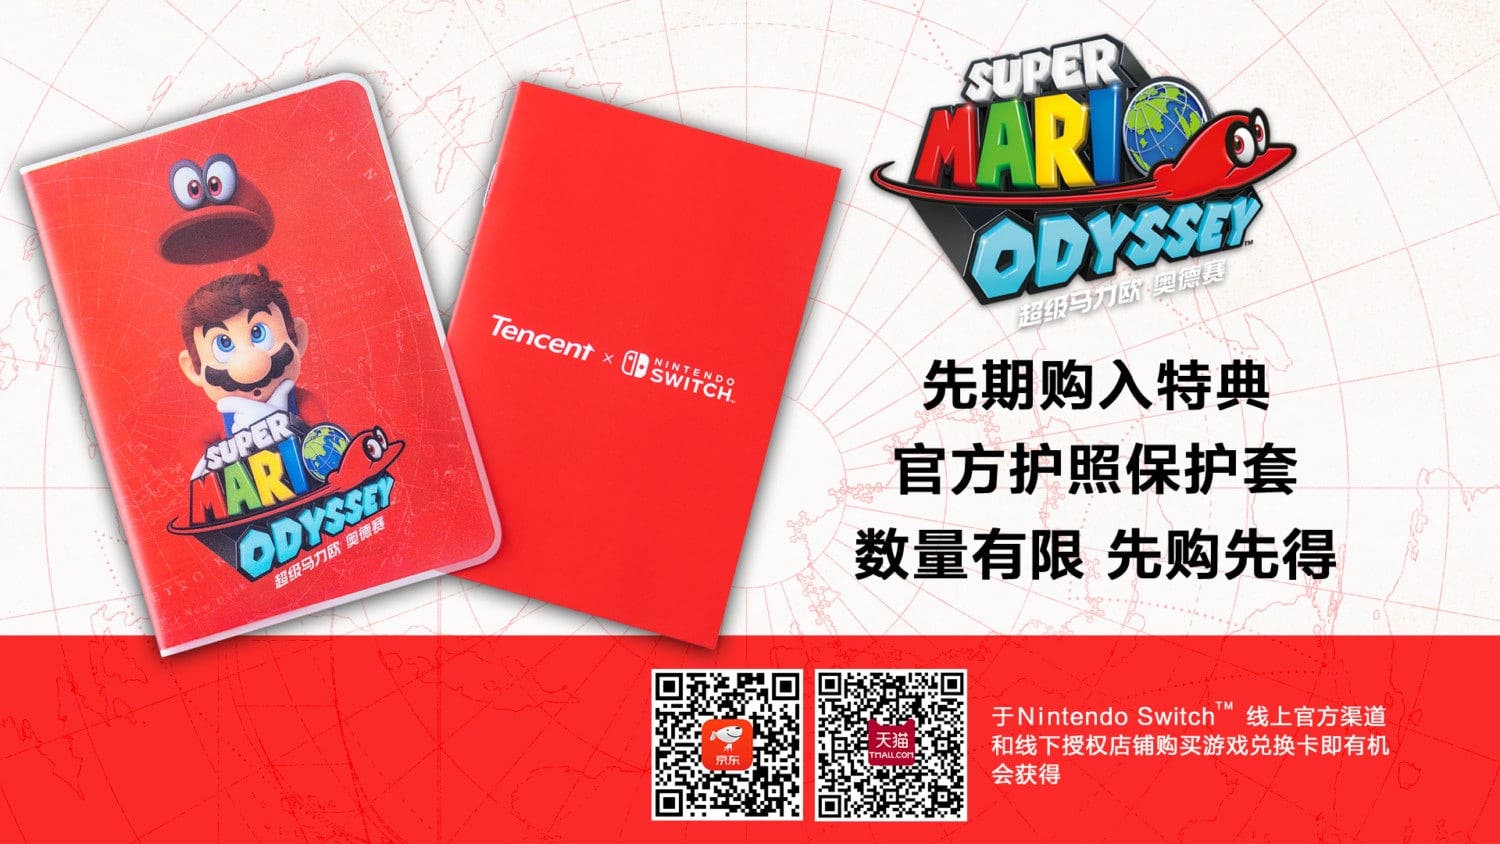 Super Mario Odyssey y Mario Kart 8 Deluxe se lanzan el 16 de marzo en China con estos regalos